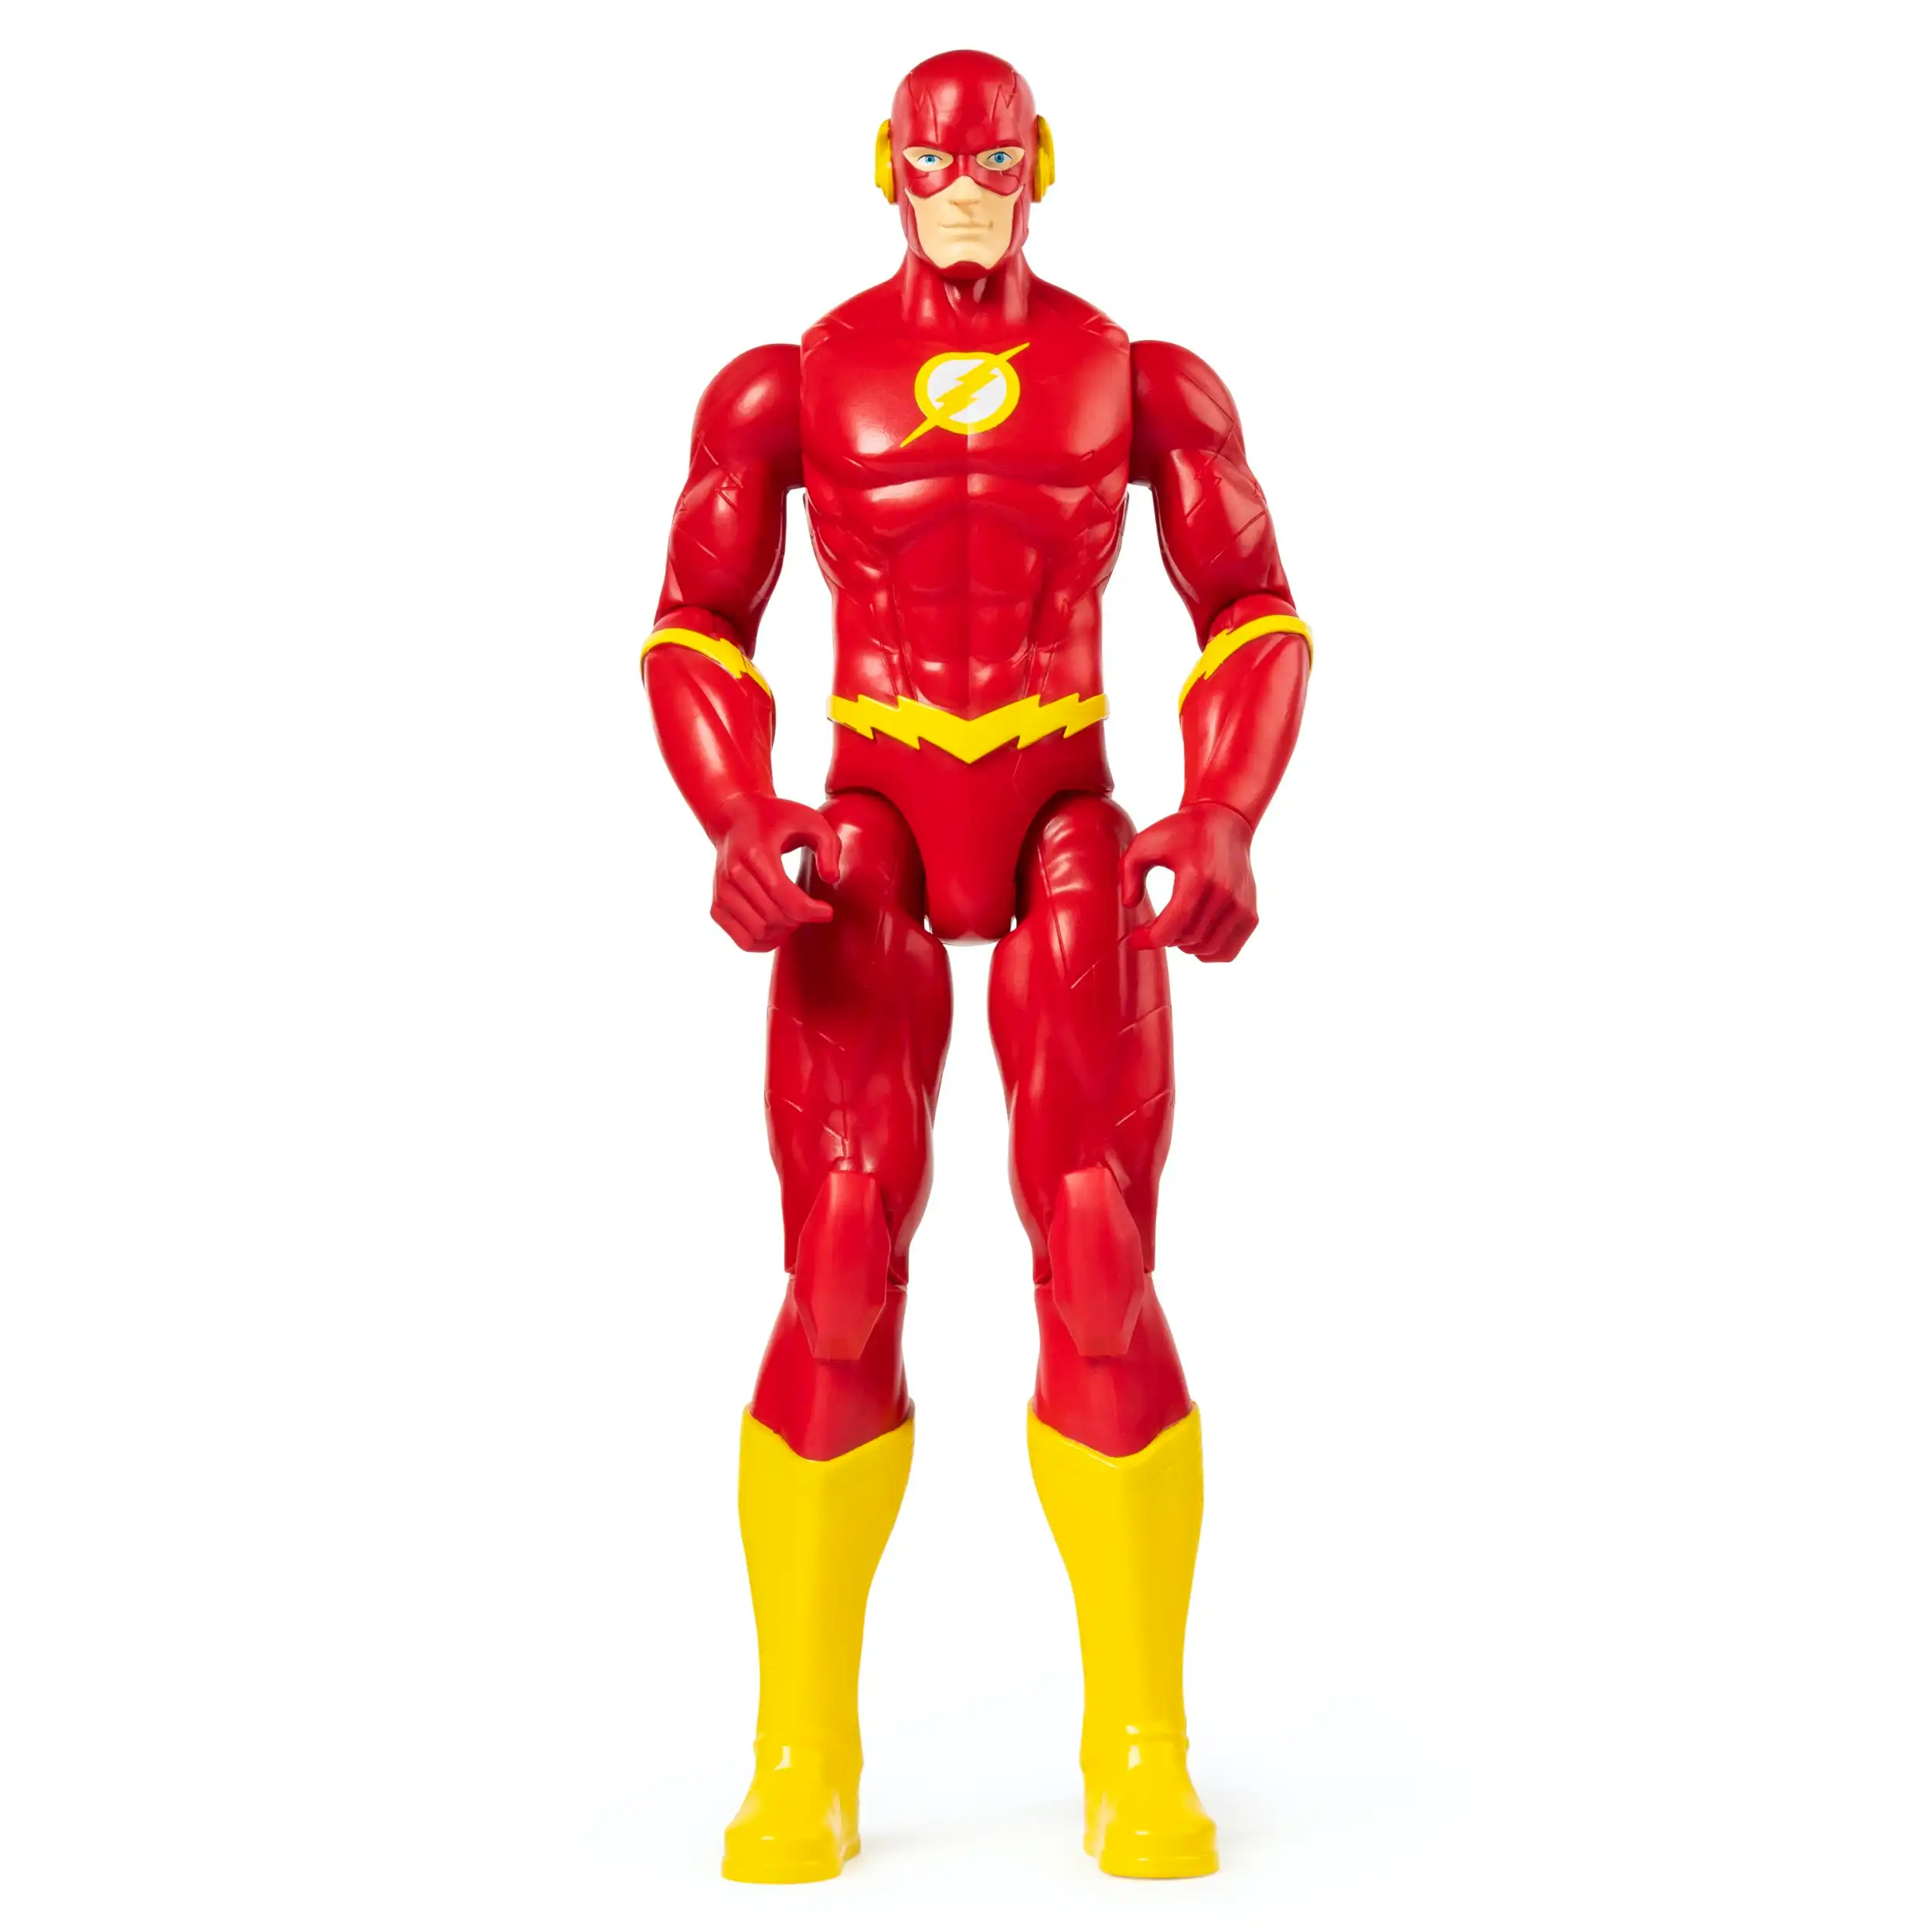 DC Comics: The Flash Action Figure